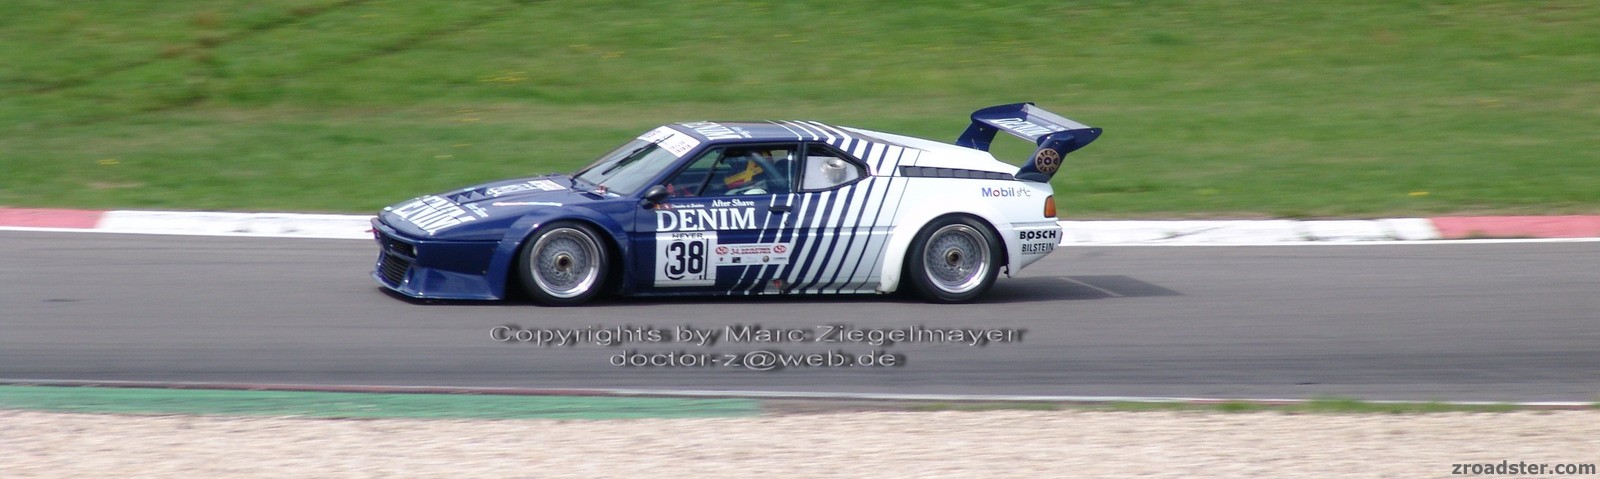 AvD Oldtimer Grand Prix 2006